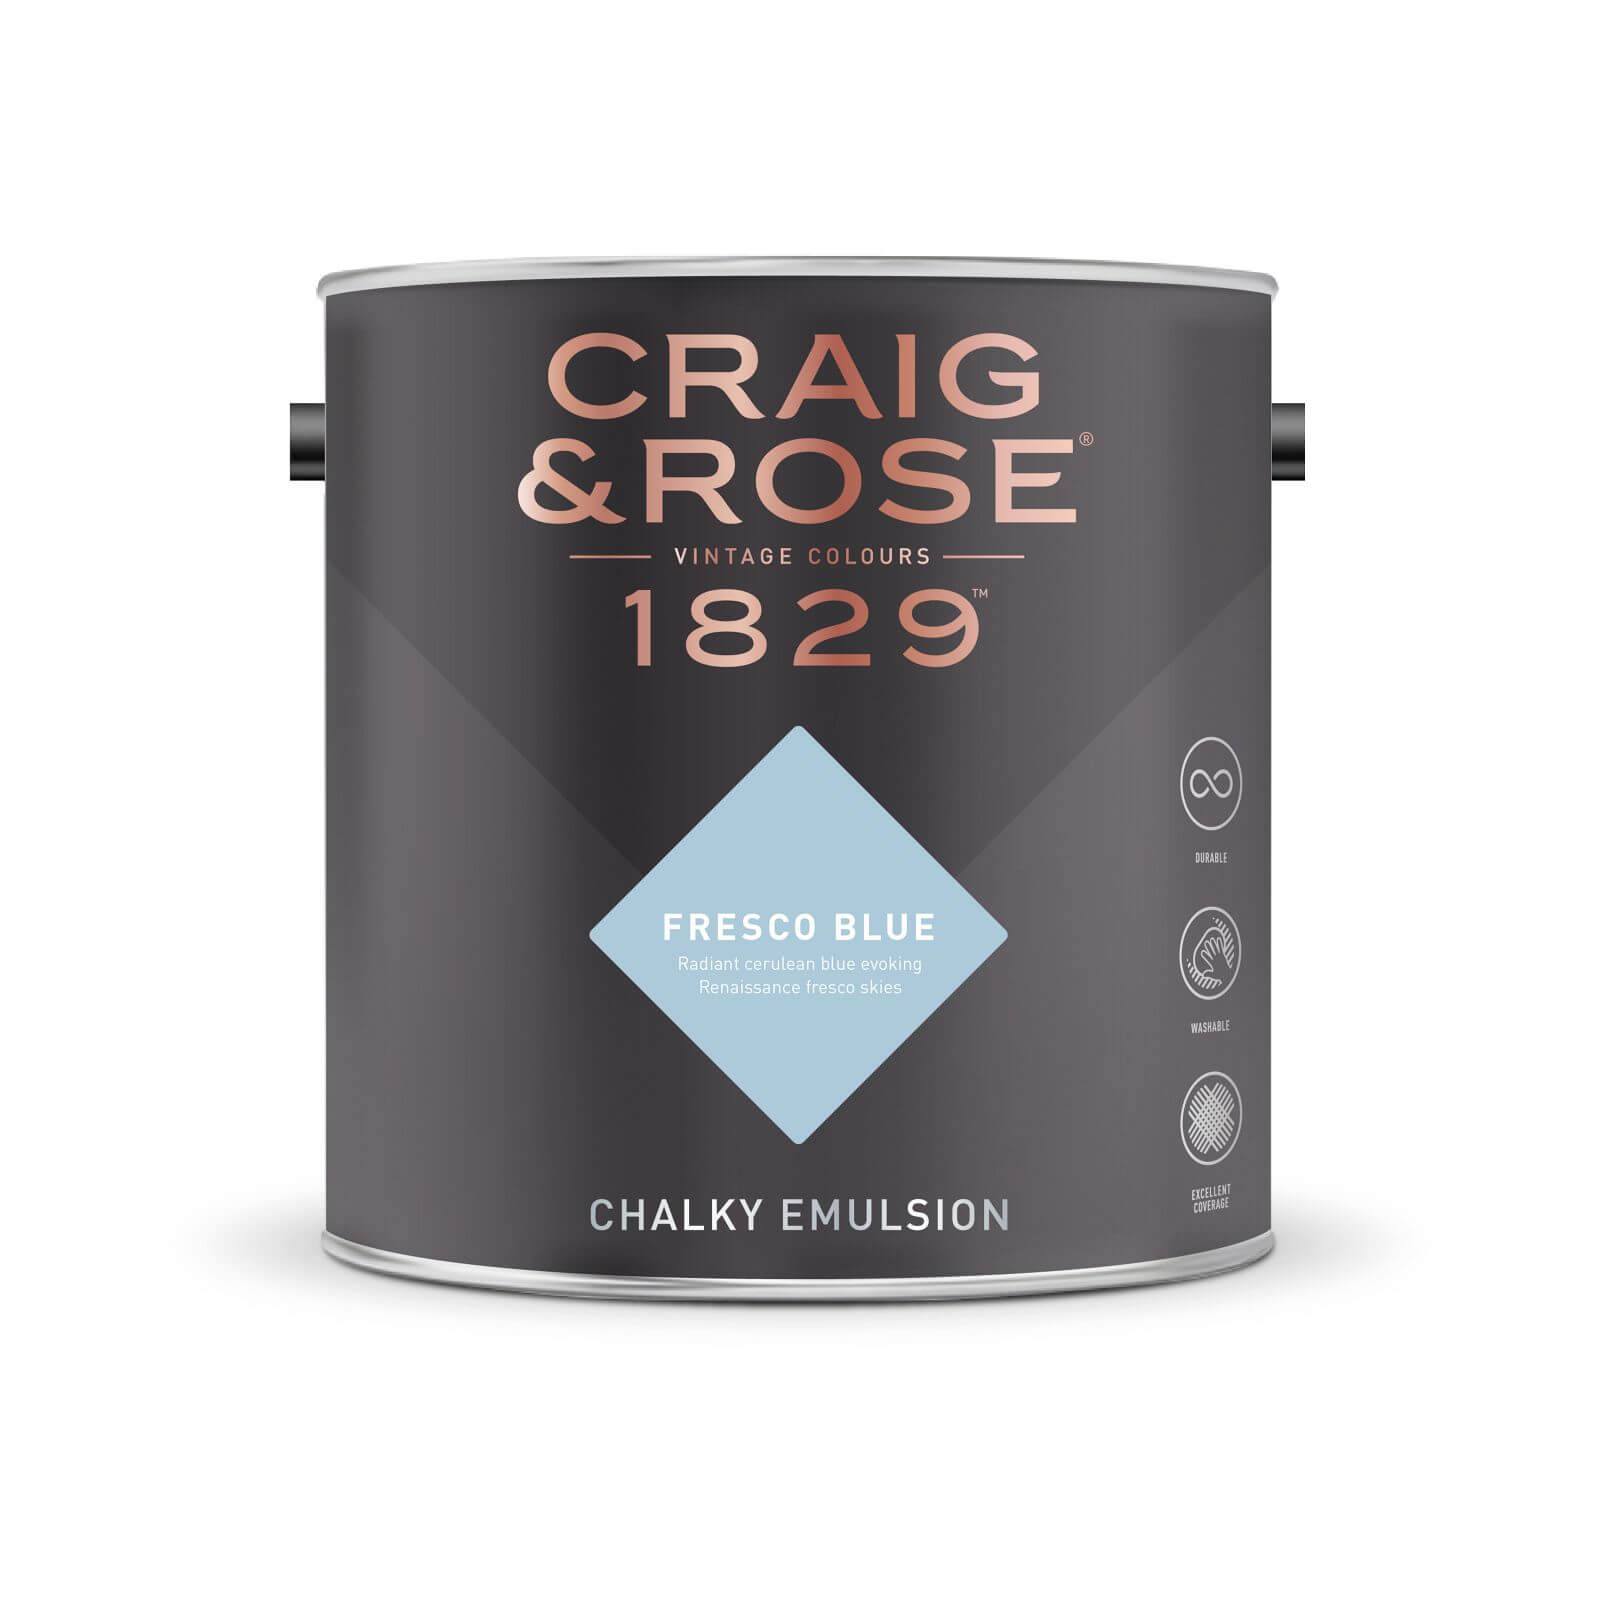 Craig & Rose 1829 Chalky Emulsion Paint Fresco Blue - 5L